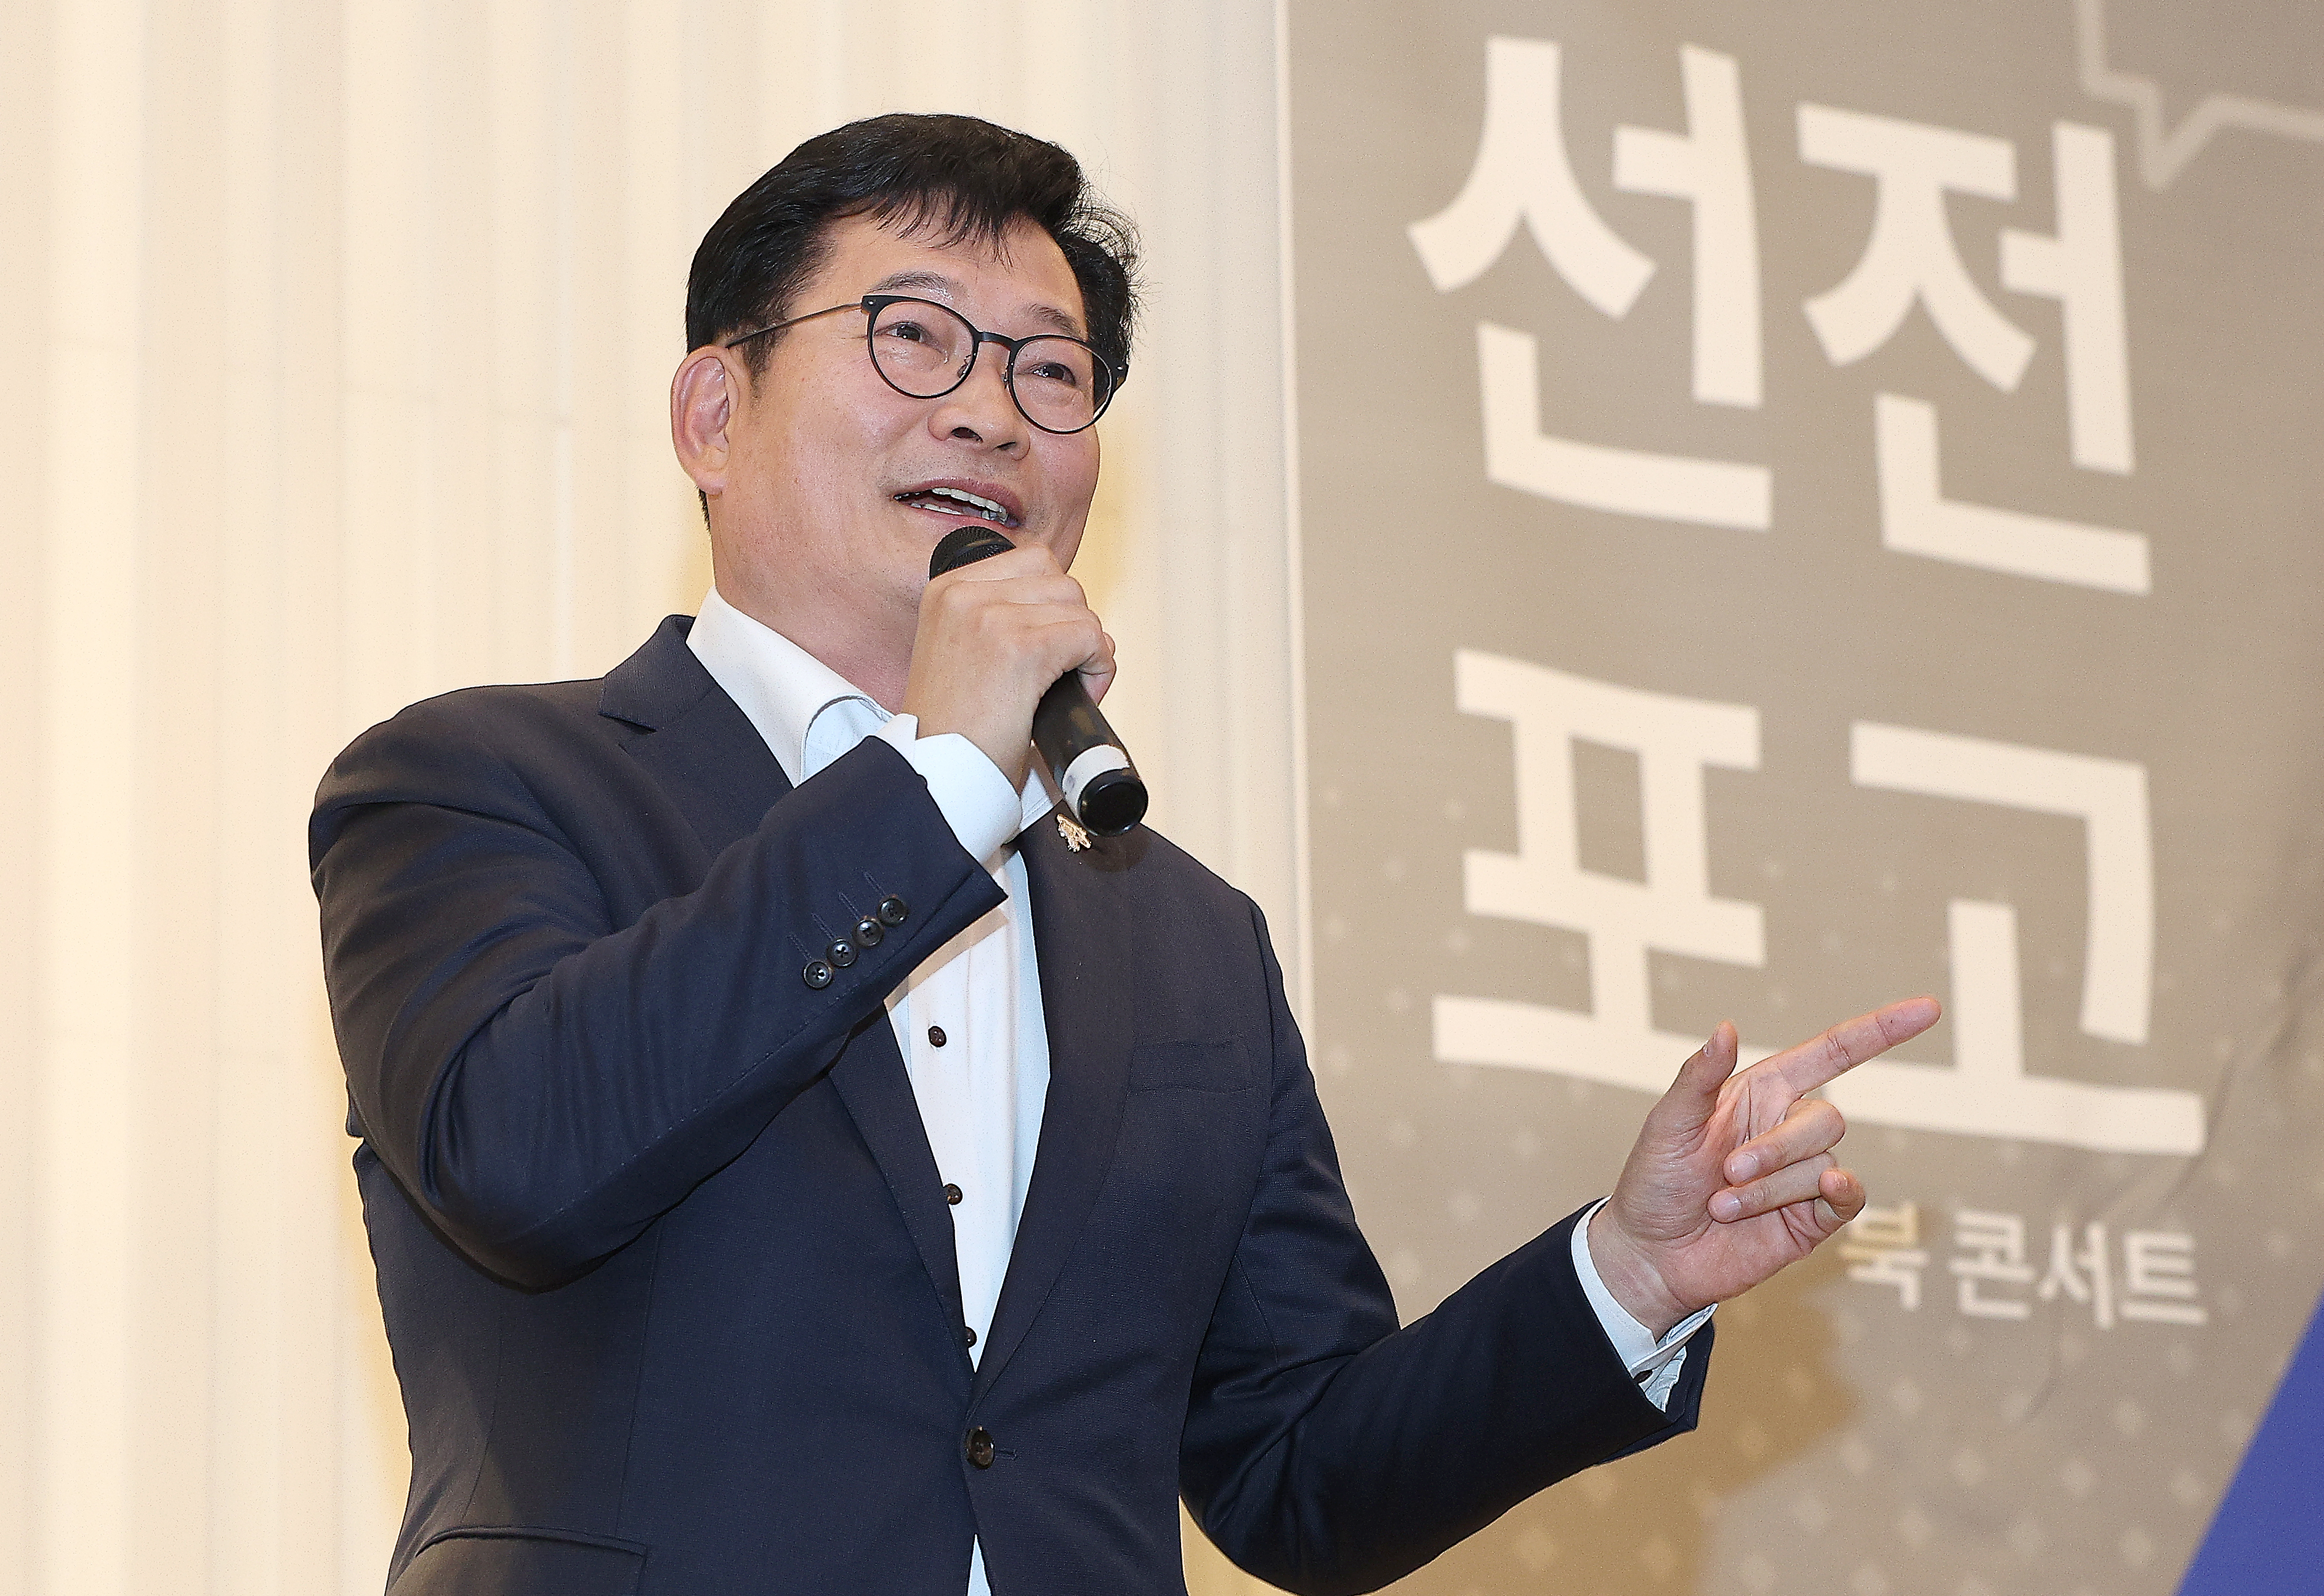 송영길 전 민주당 대표. 연합뉴스